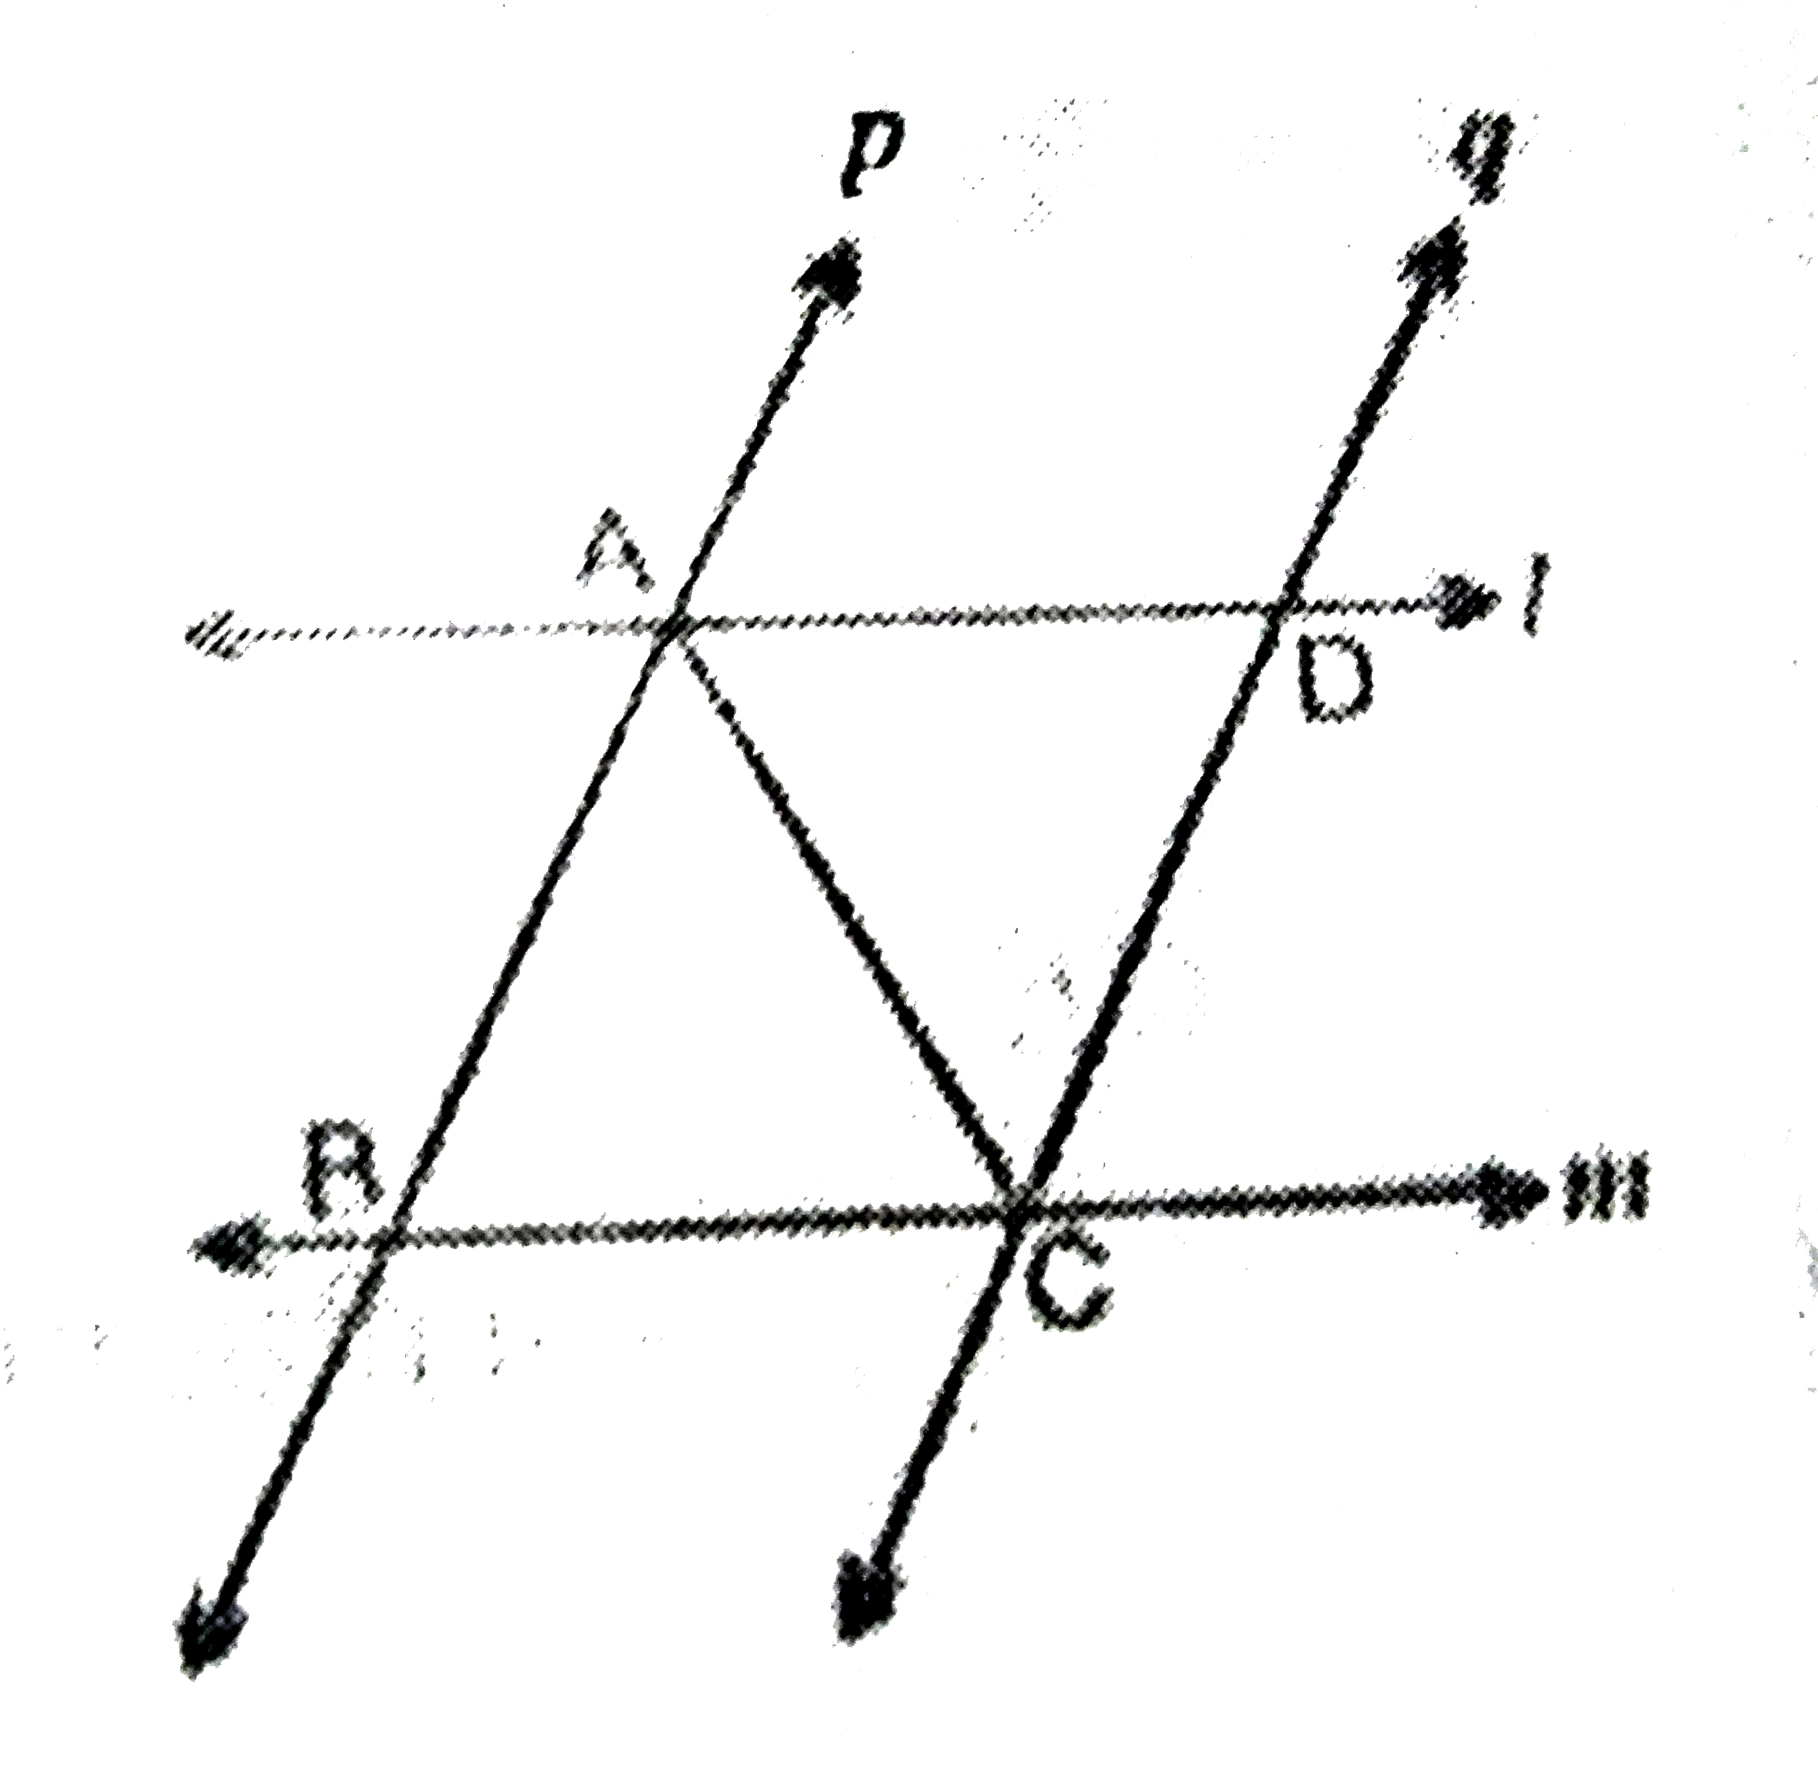 l और m दो समांतर रेखाए है जिन्हे समान्तर रेखाओ p और q का एक अन्य युग्म प्रतिछेद करता है (देखिये आकृति) दर्शाए की triangleABC cong triangleCDA है